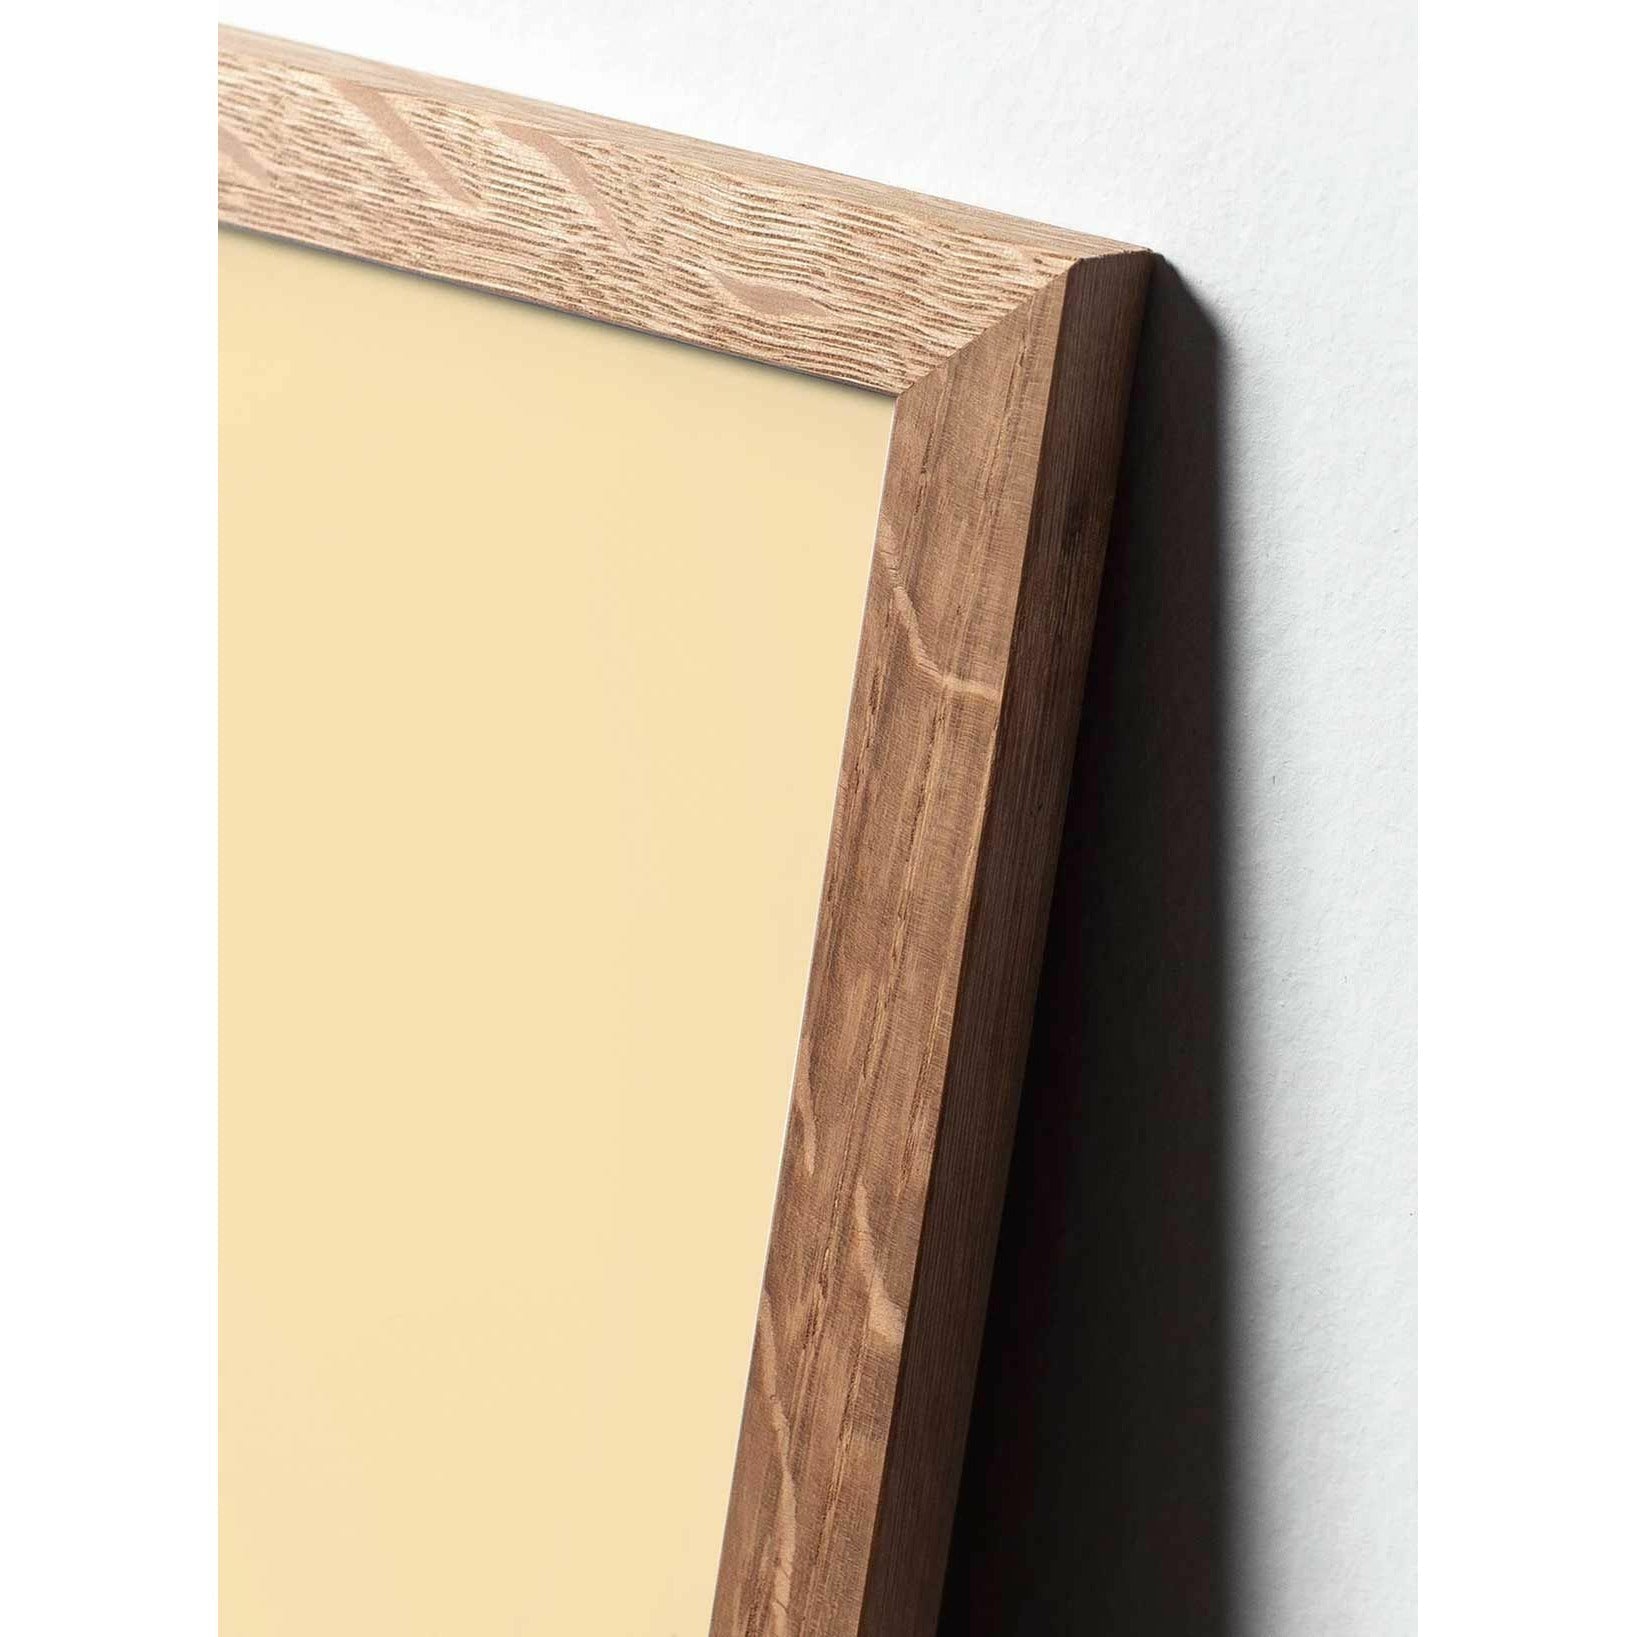 Brainchild Munapaperin pidike juliste, kehys, joka on valmistettu kevyestä puusta 50x70 cm, vaaleanpunainen tausta